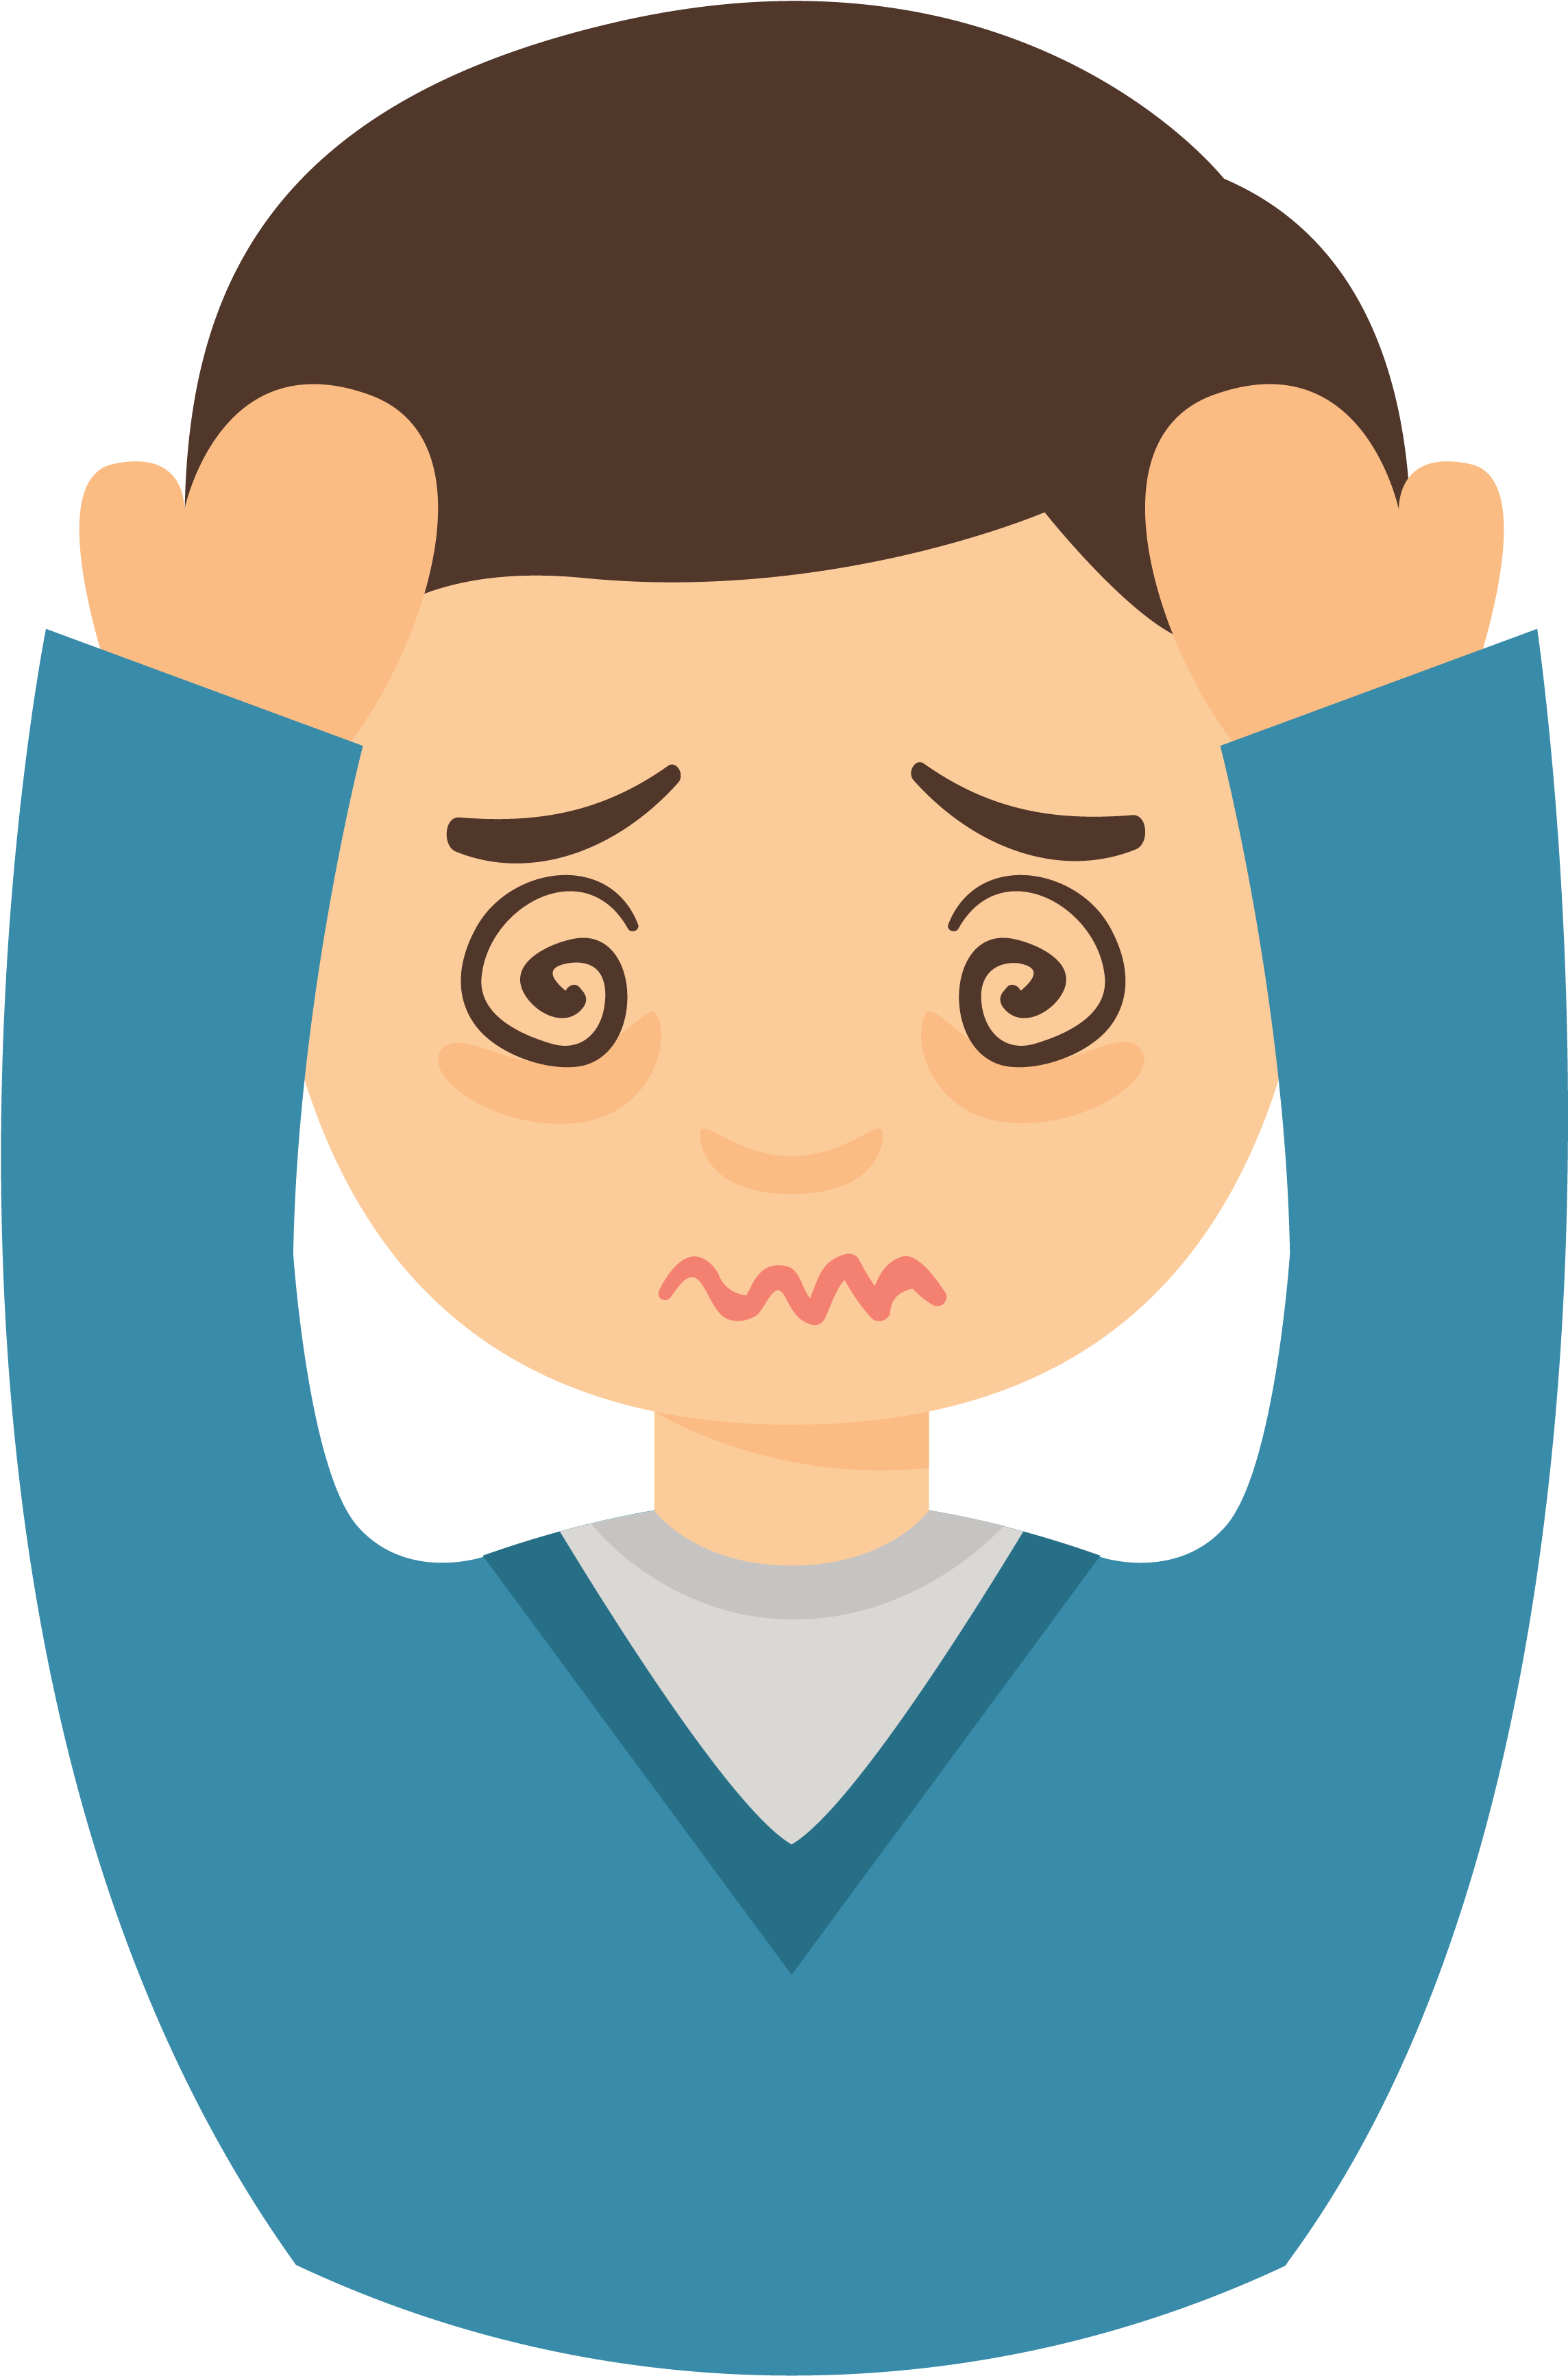 Pain Migraine Headache Symptom Common Cold.